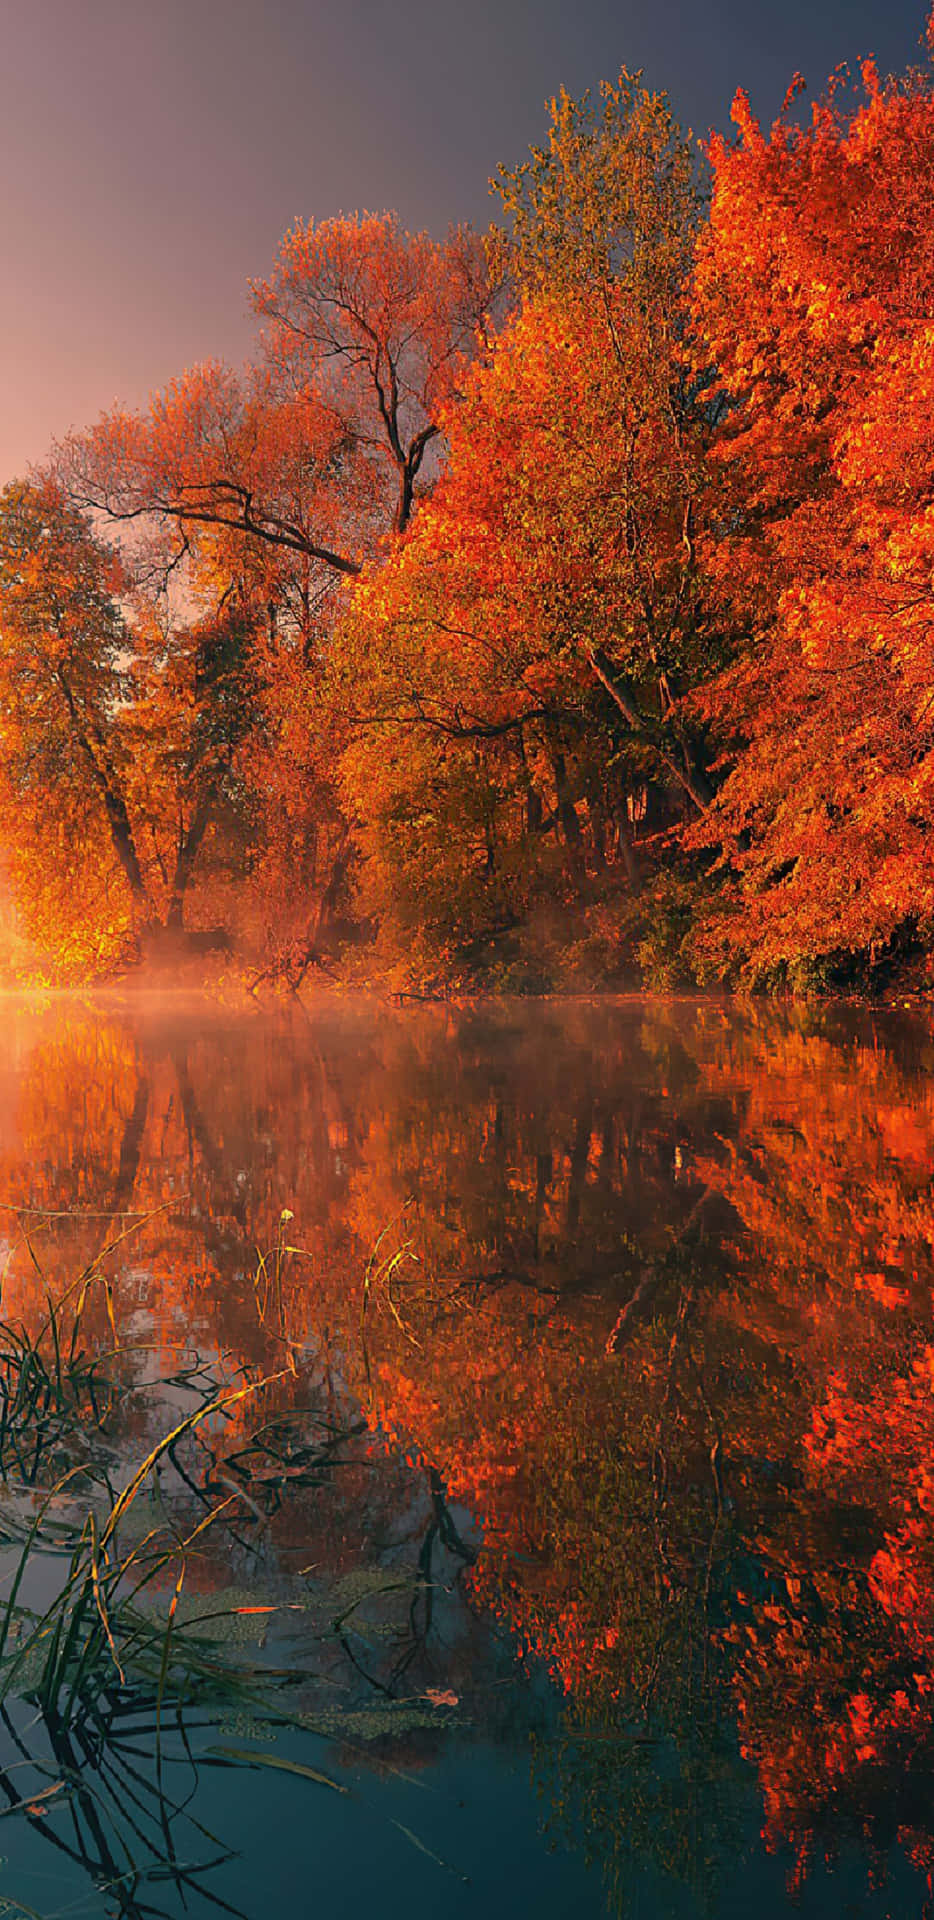 Pixel3xl Herbstbäume Am See Hintergrund